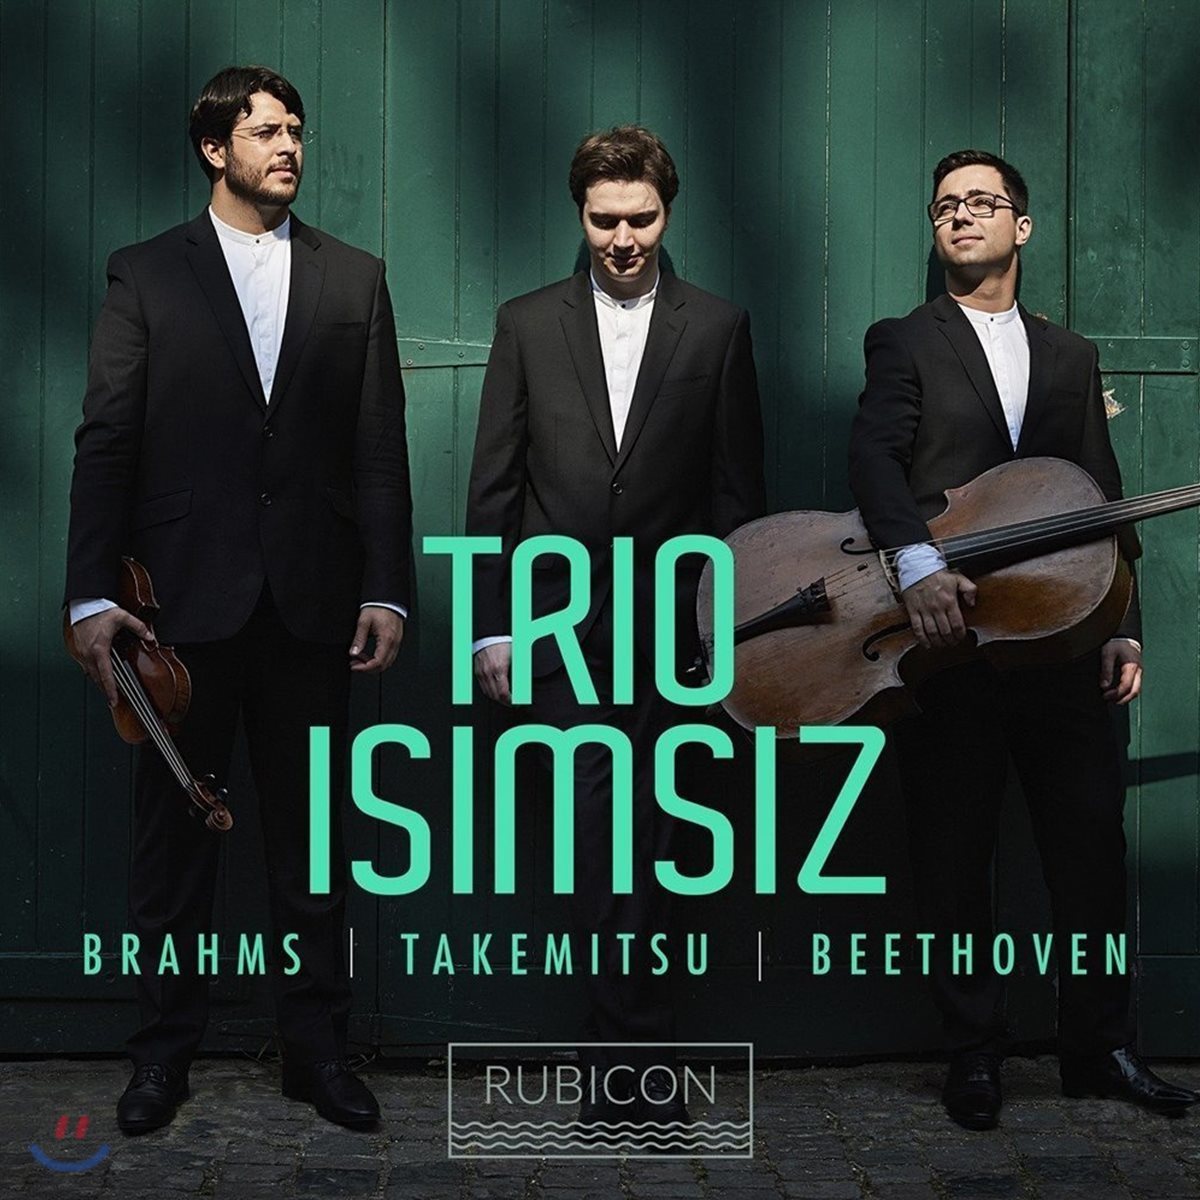 Trio Isimsiz 브람스: 피아노 삼중주 3번 / 타케미츠: 비트윈 타이즈 / 베토벤: 피아노 삼중주 5번 ‘유령&#39; (Brahms / Takemitsu / Beethoven: Piano Trios)